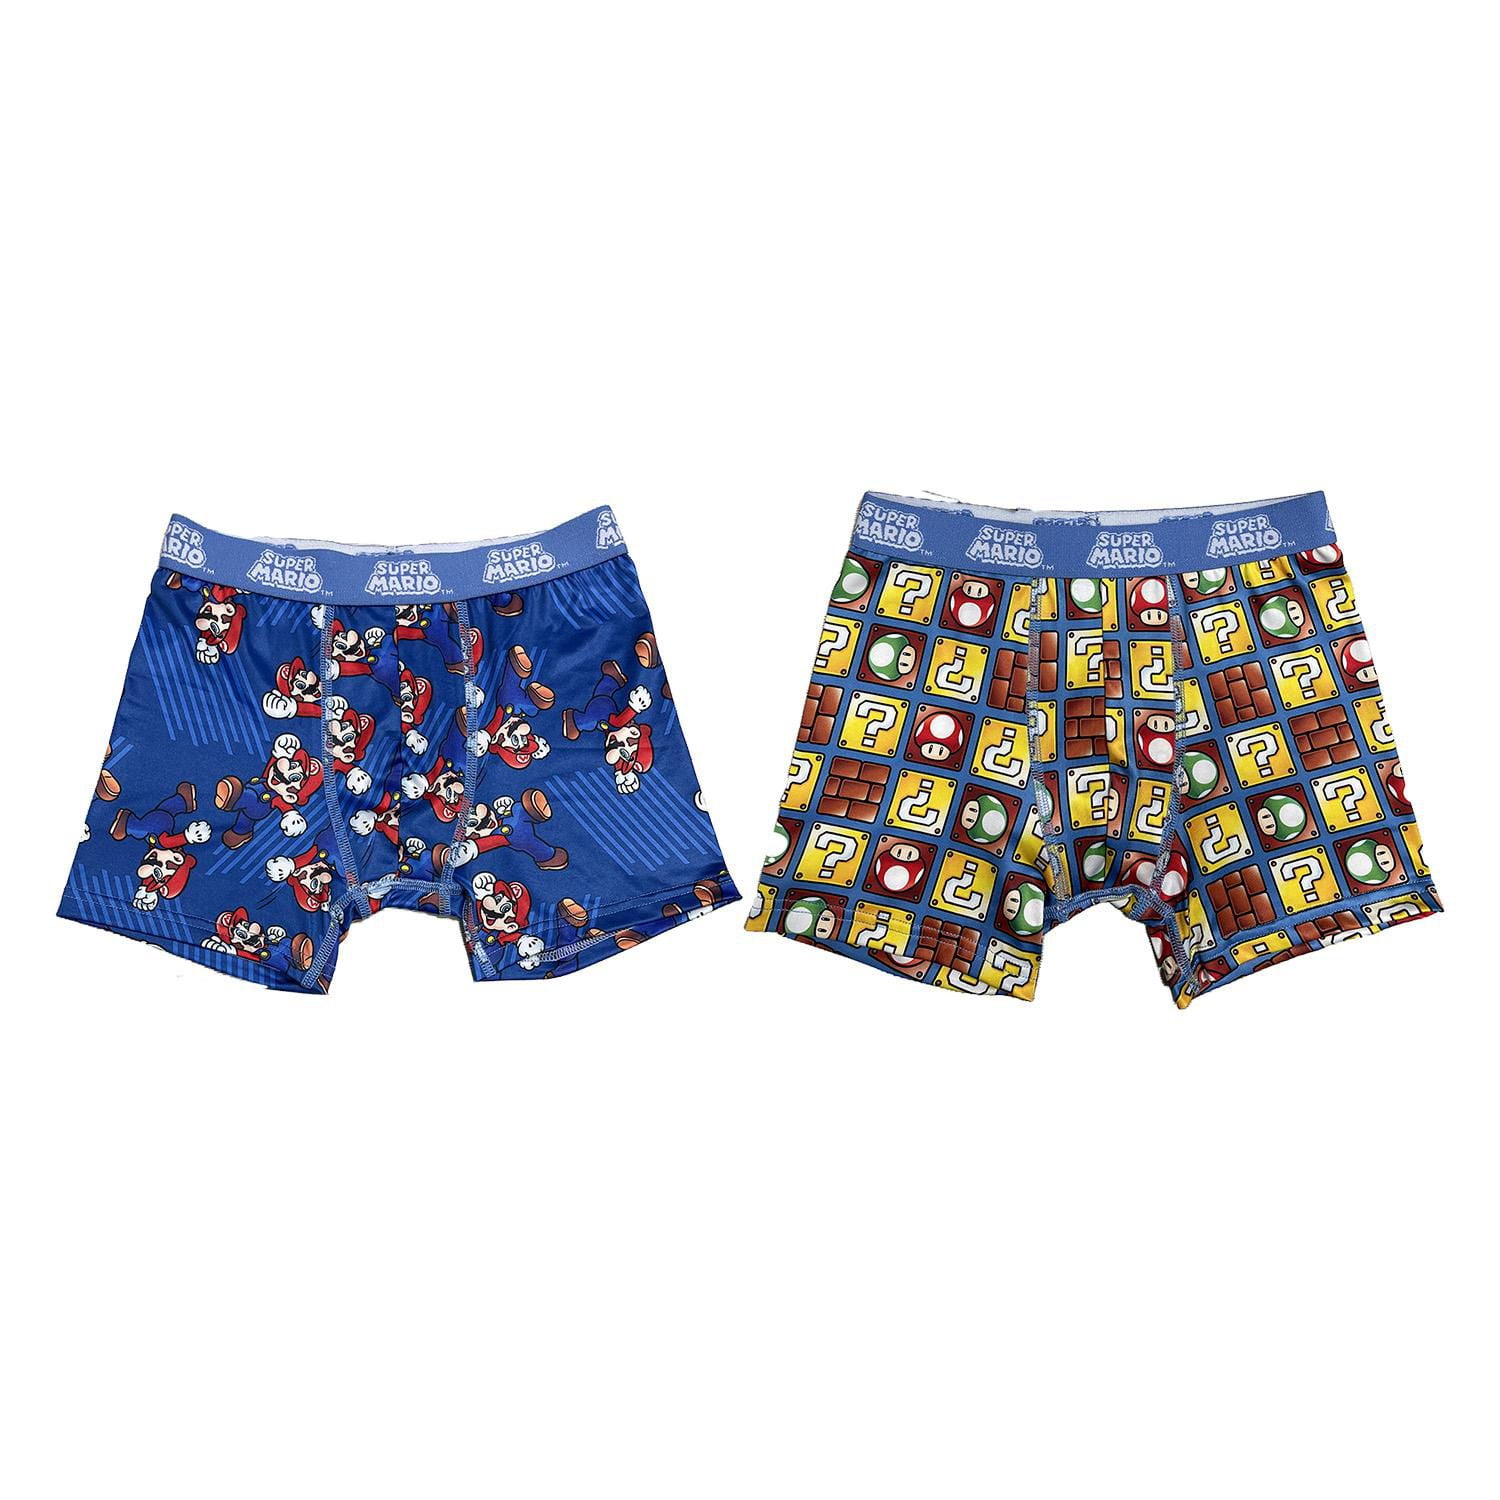 Nintendo Mario Kart Boys Boxer Brief Underwear, 4-Pack, Sizes 4-14